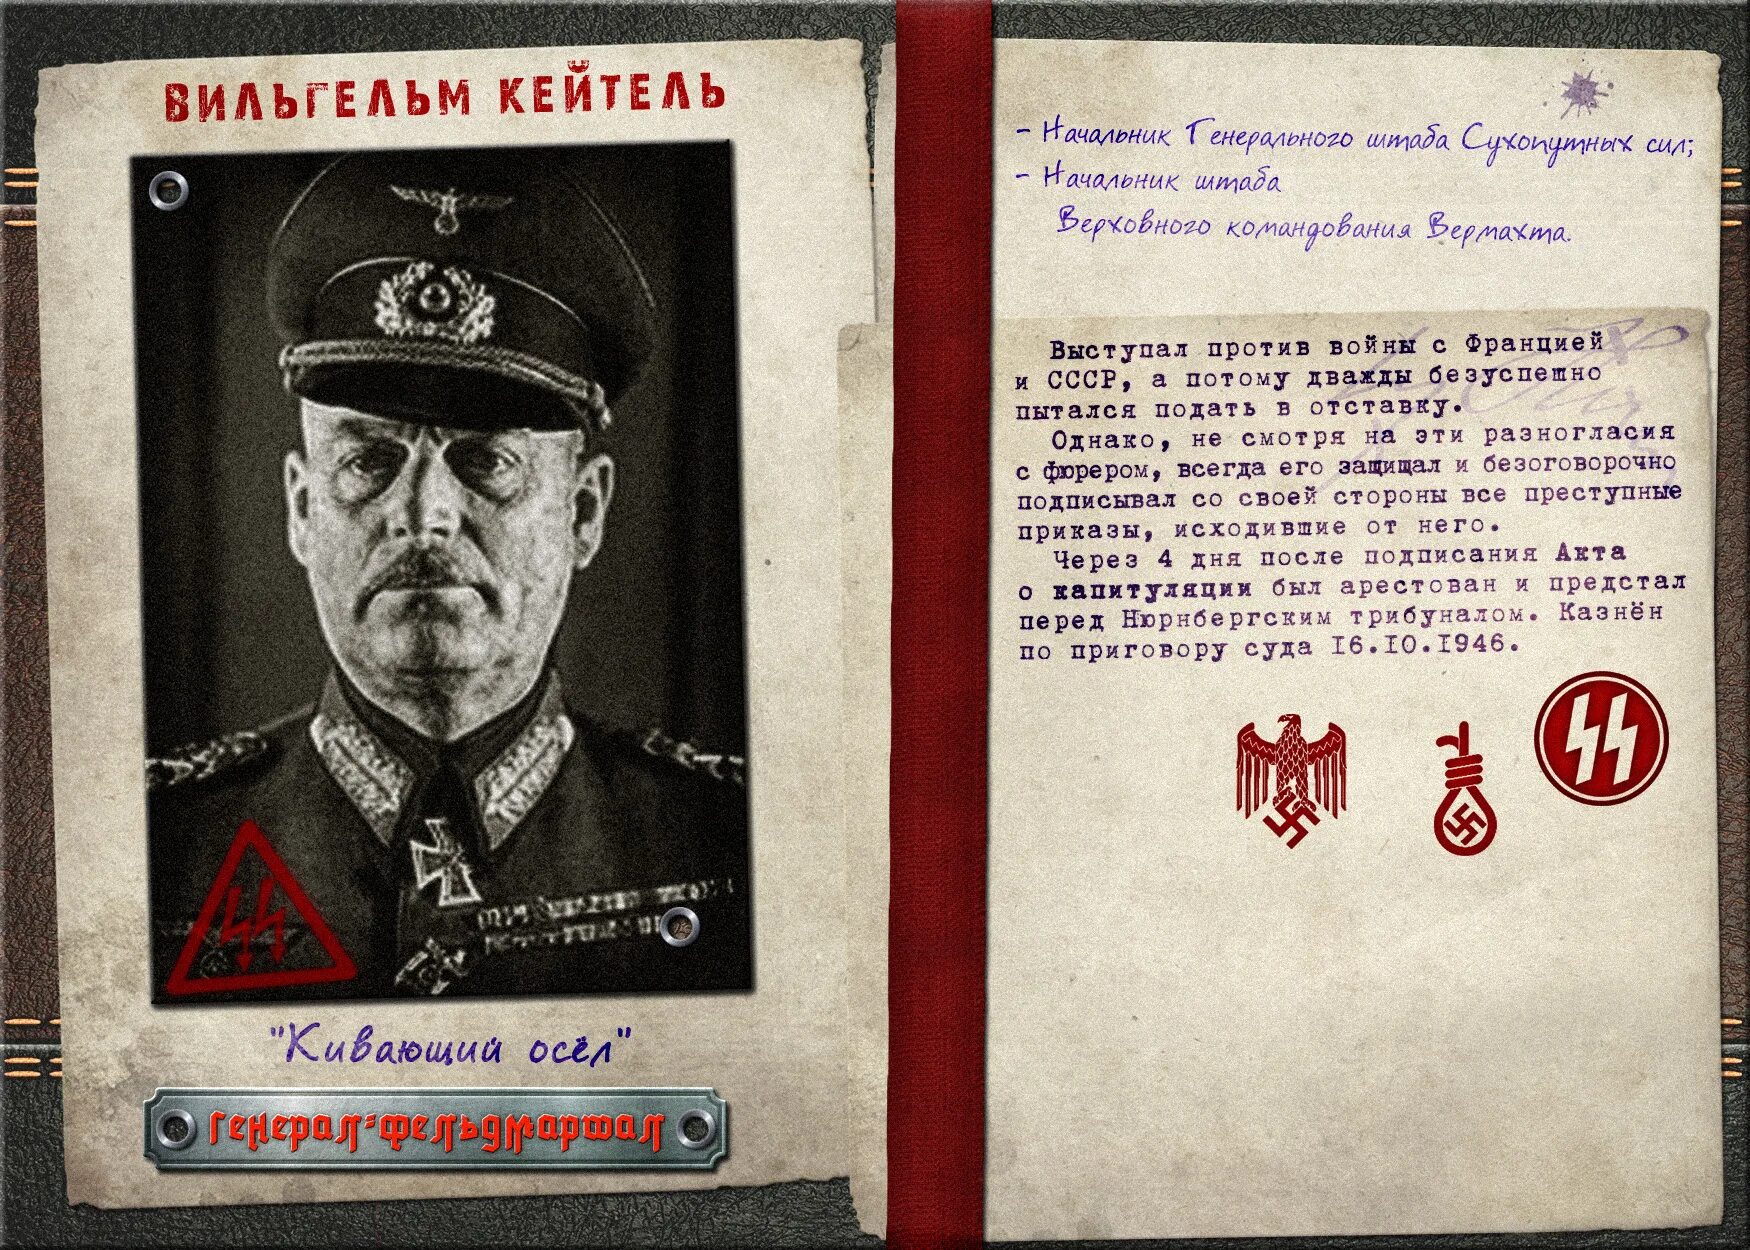 50 главных. Деятели 3 рейха. Топ самых таинственных личностей 3 рейха. Карты с фотографиями руководителей нацистов Украины.